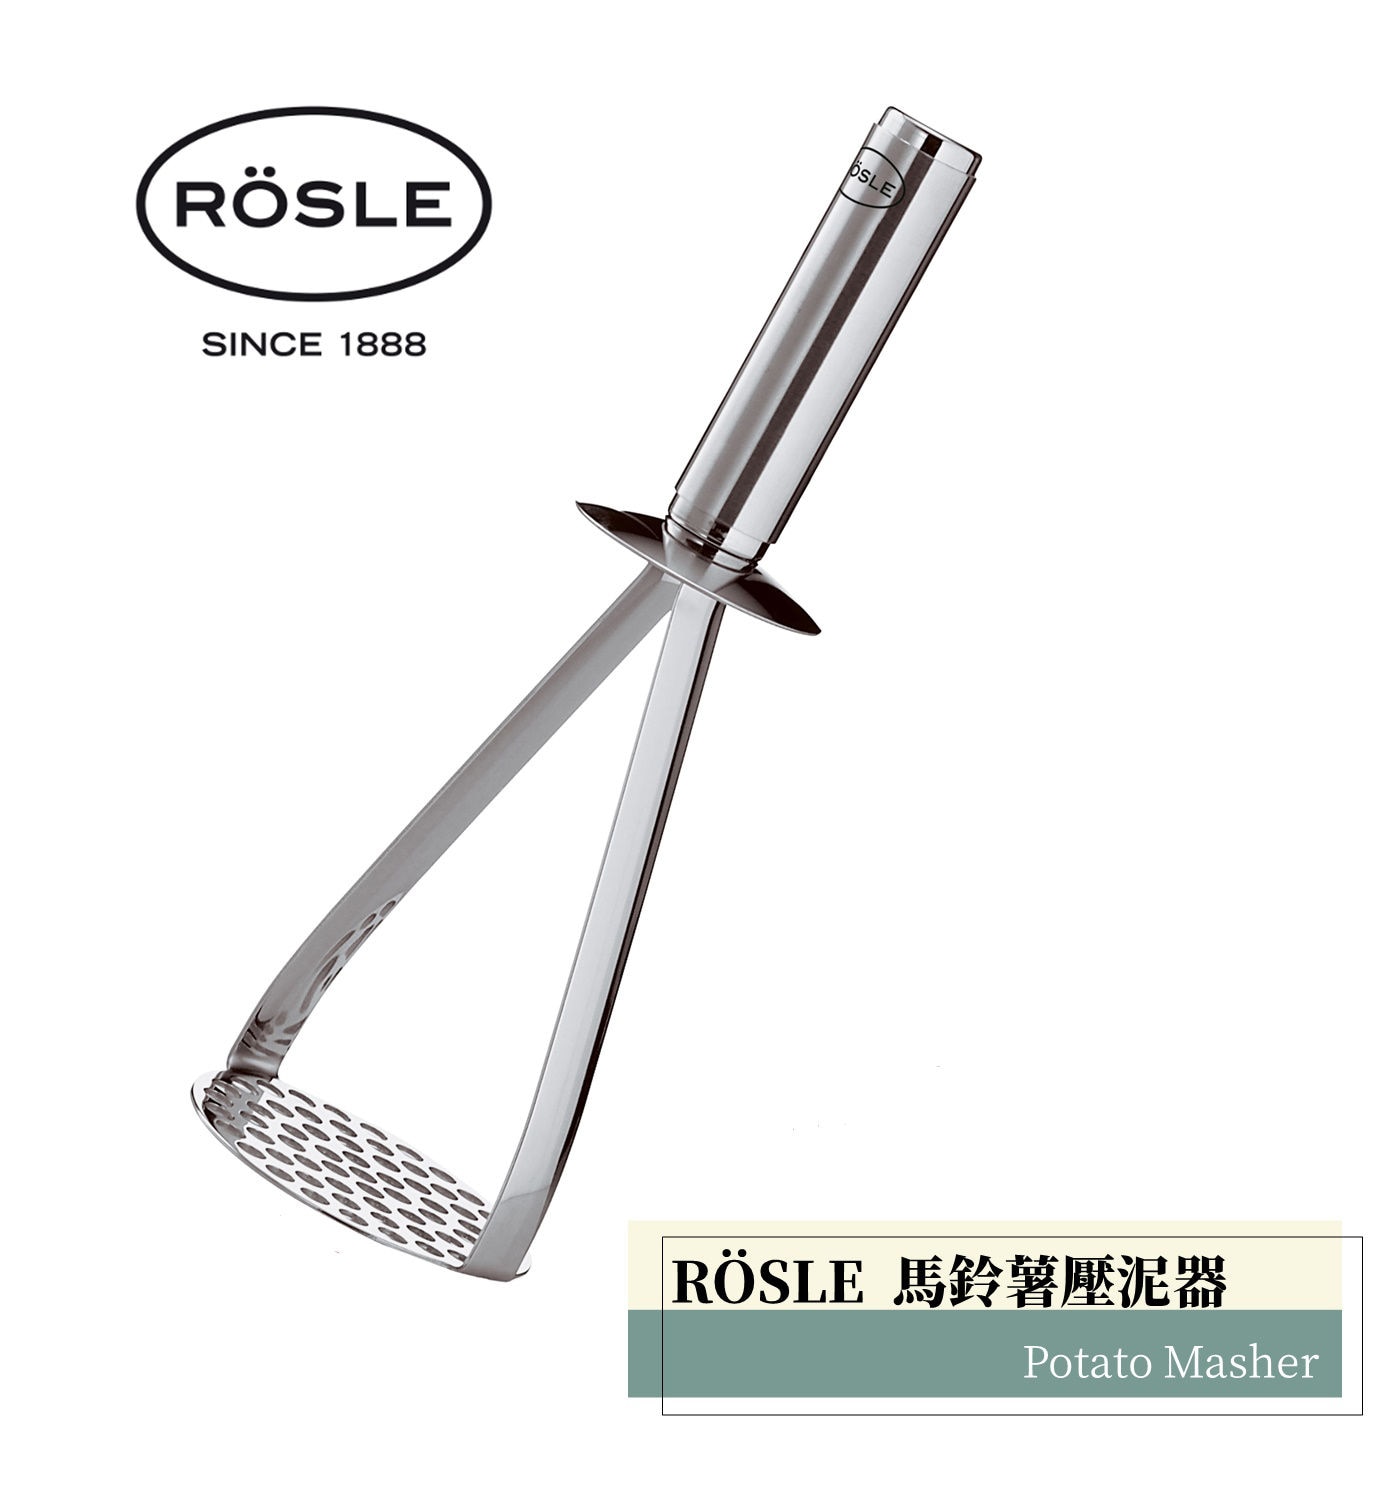 Rosle不鏽鋼馬鈴薯壓泥器廚房小幫手受力平均操作容易平面設計讓食物不易卡縫容易清潔